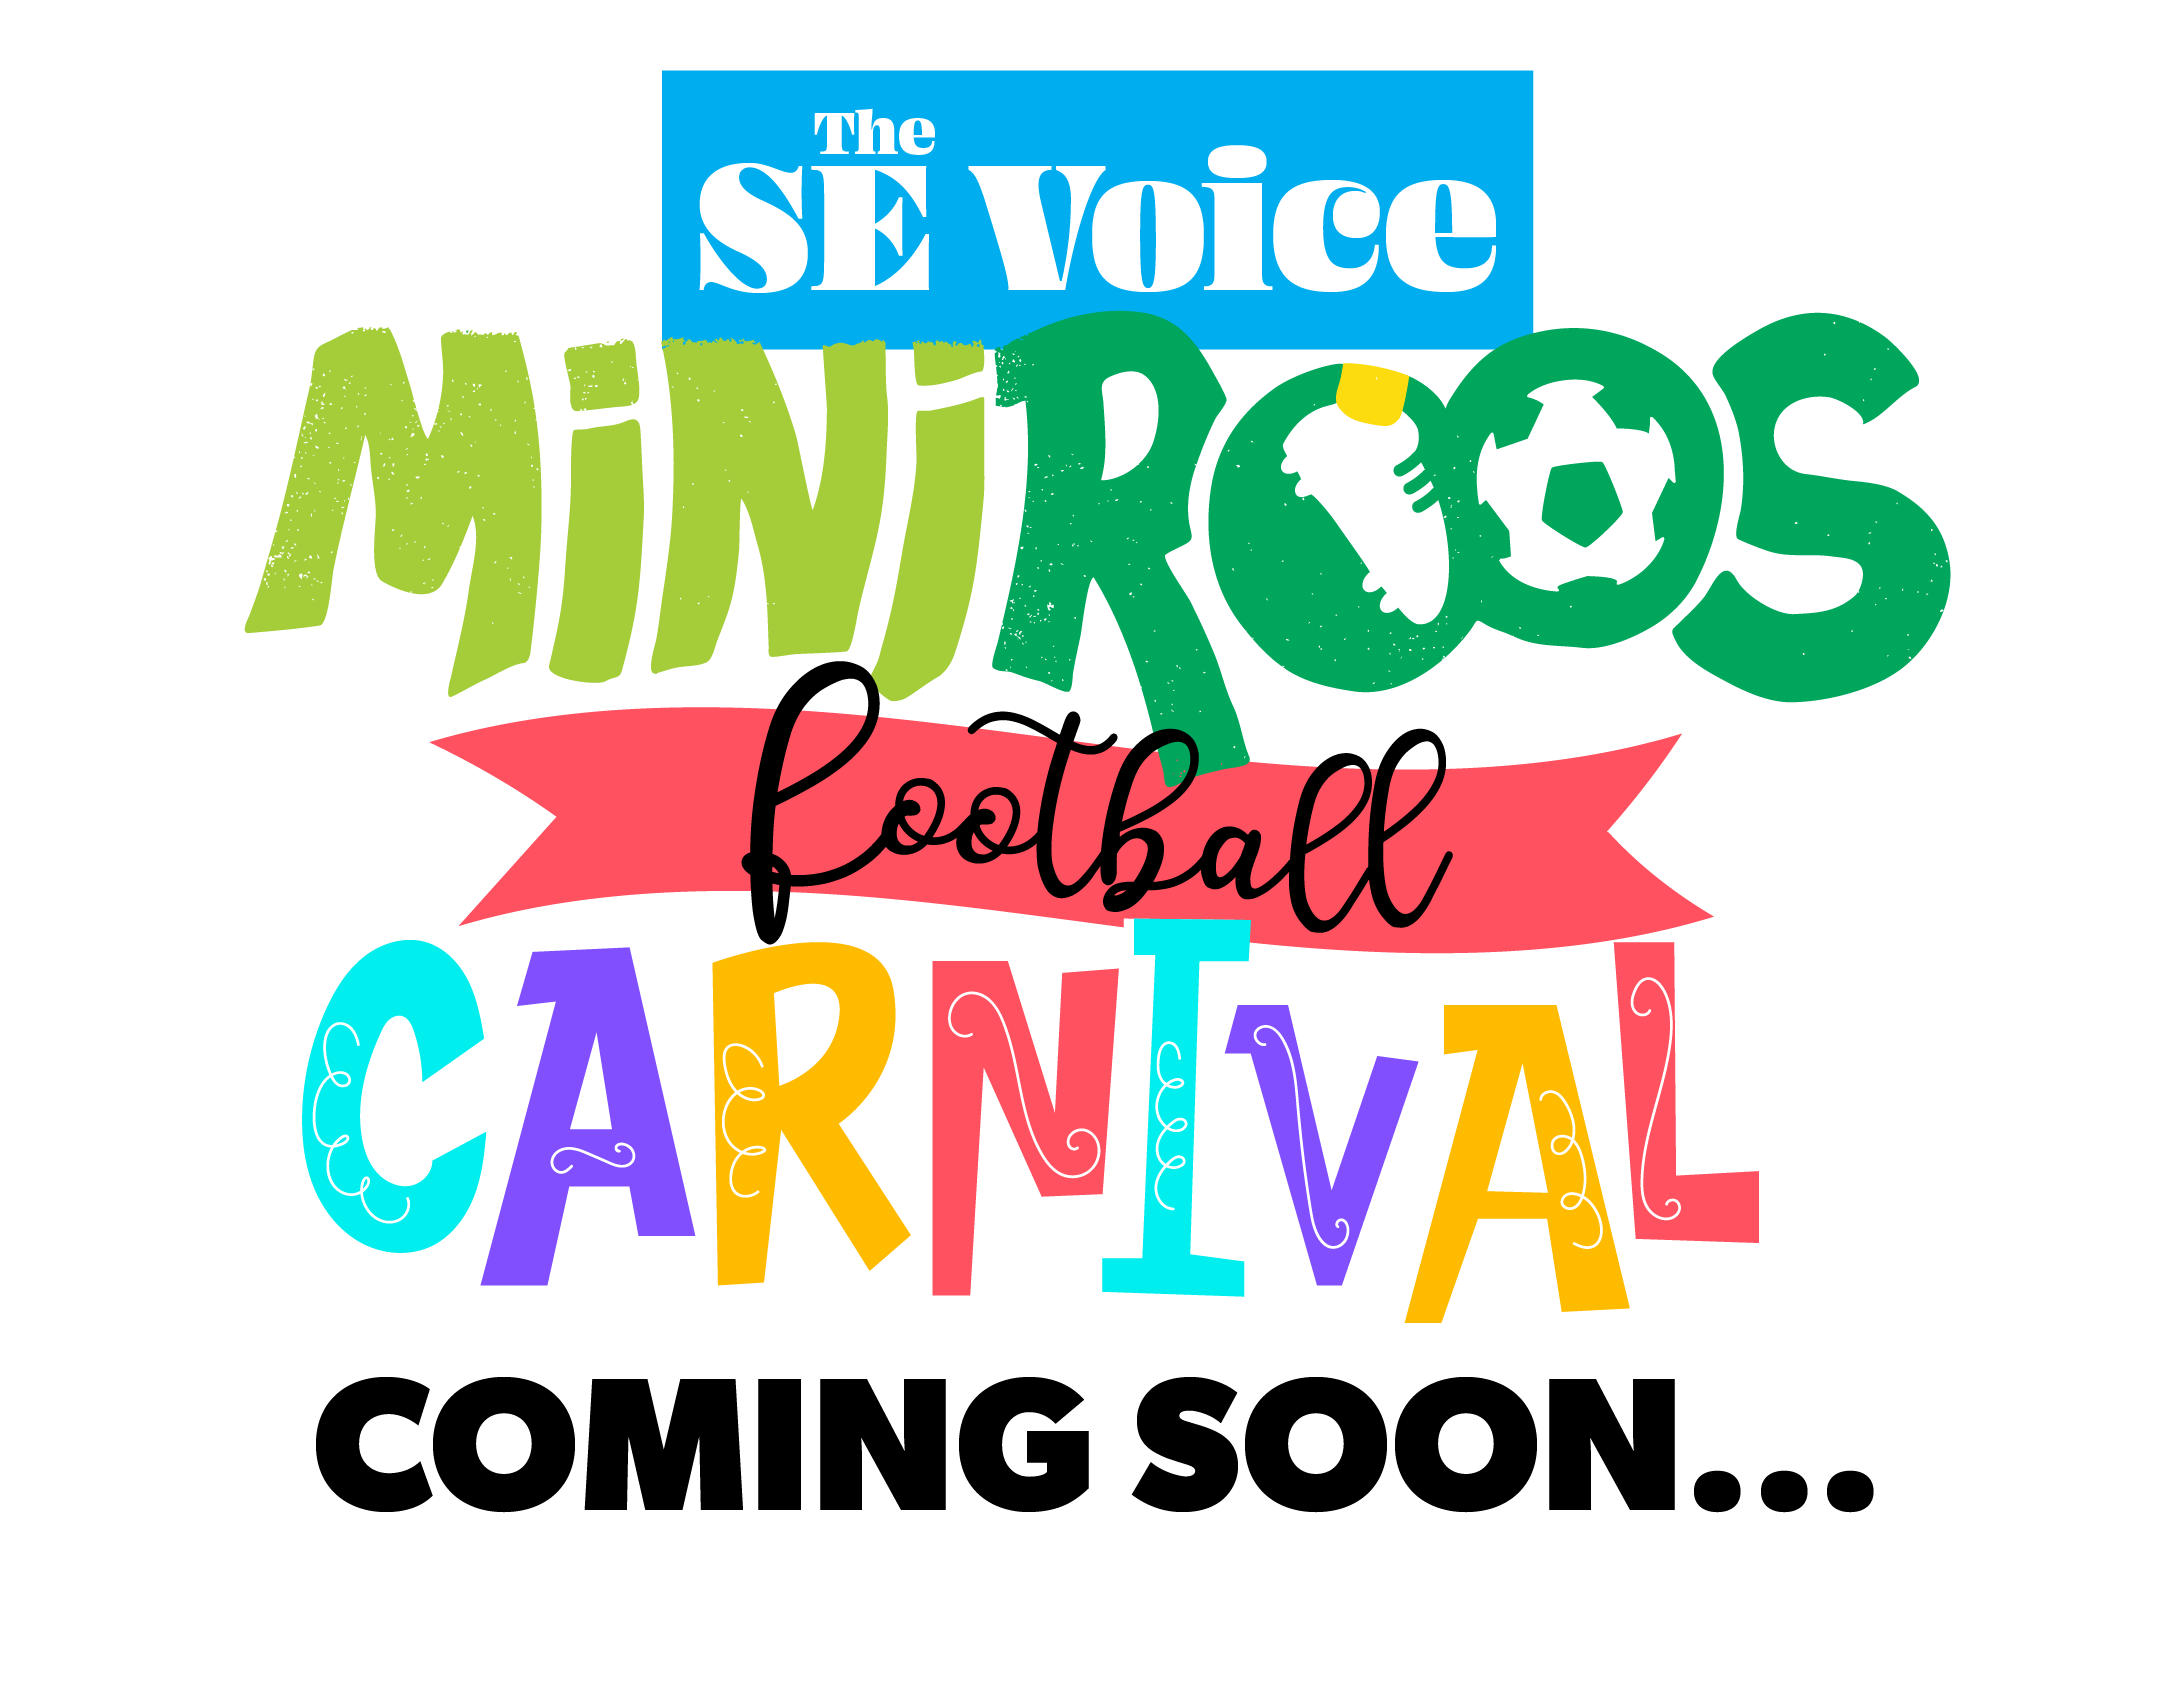 MiniRoos Carnival kickoff coming soon